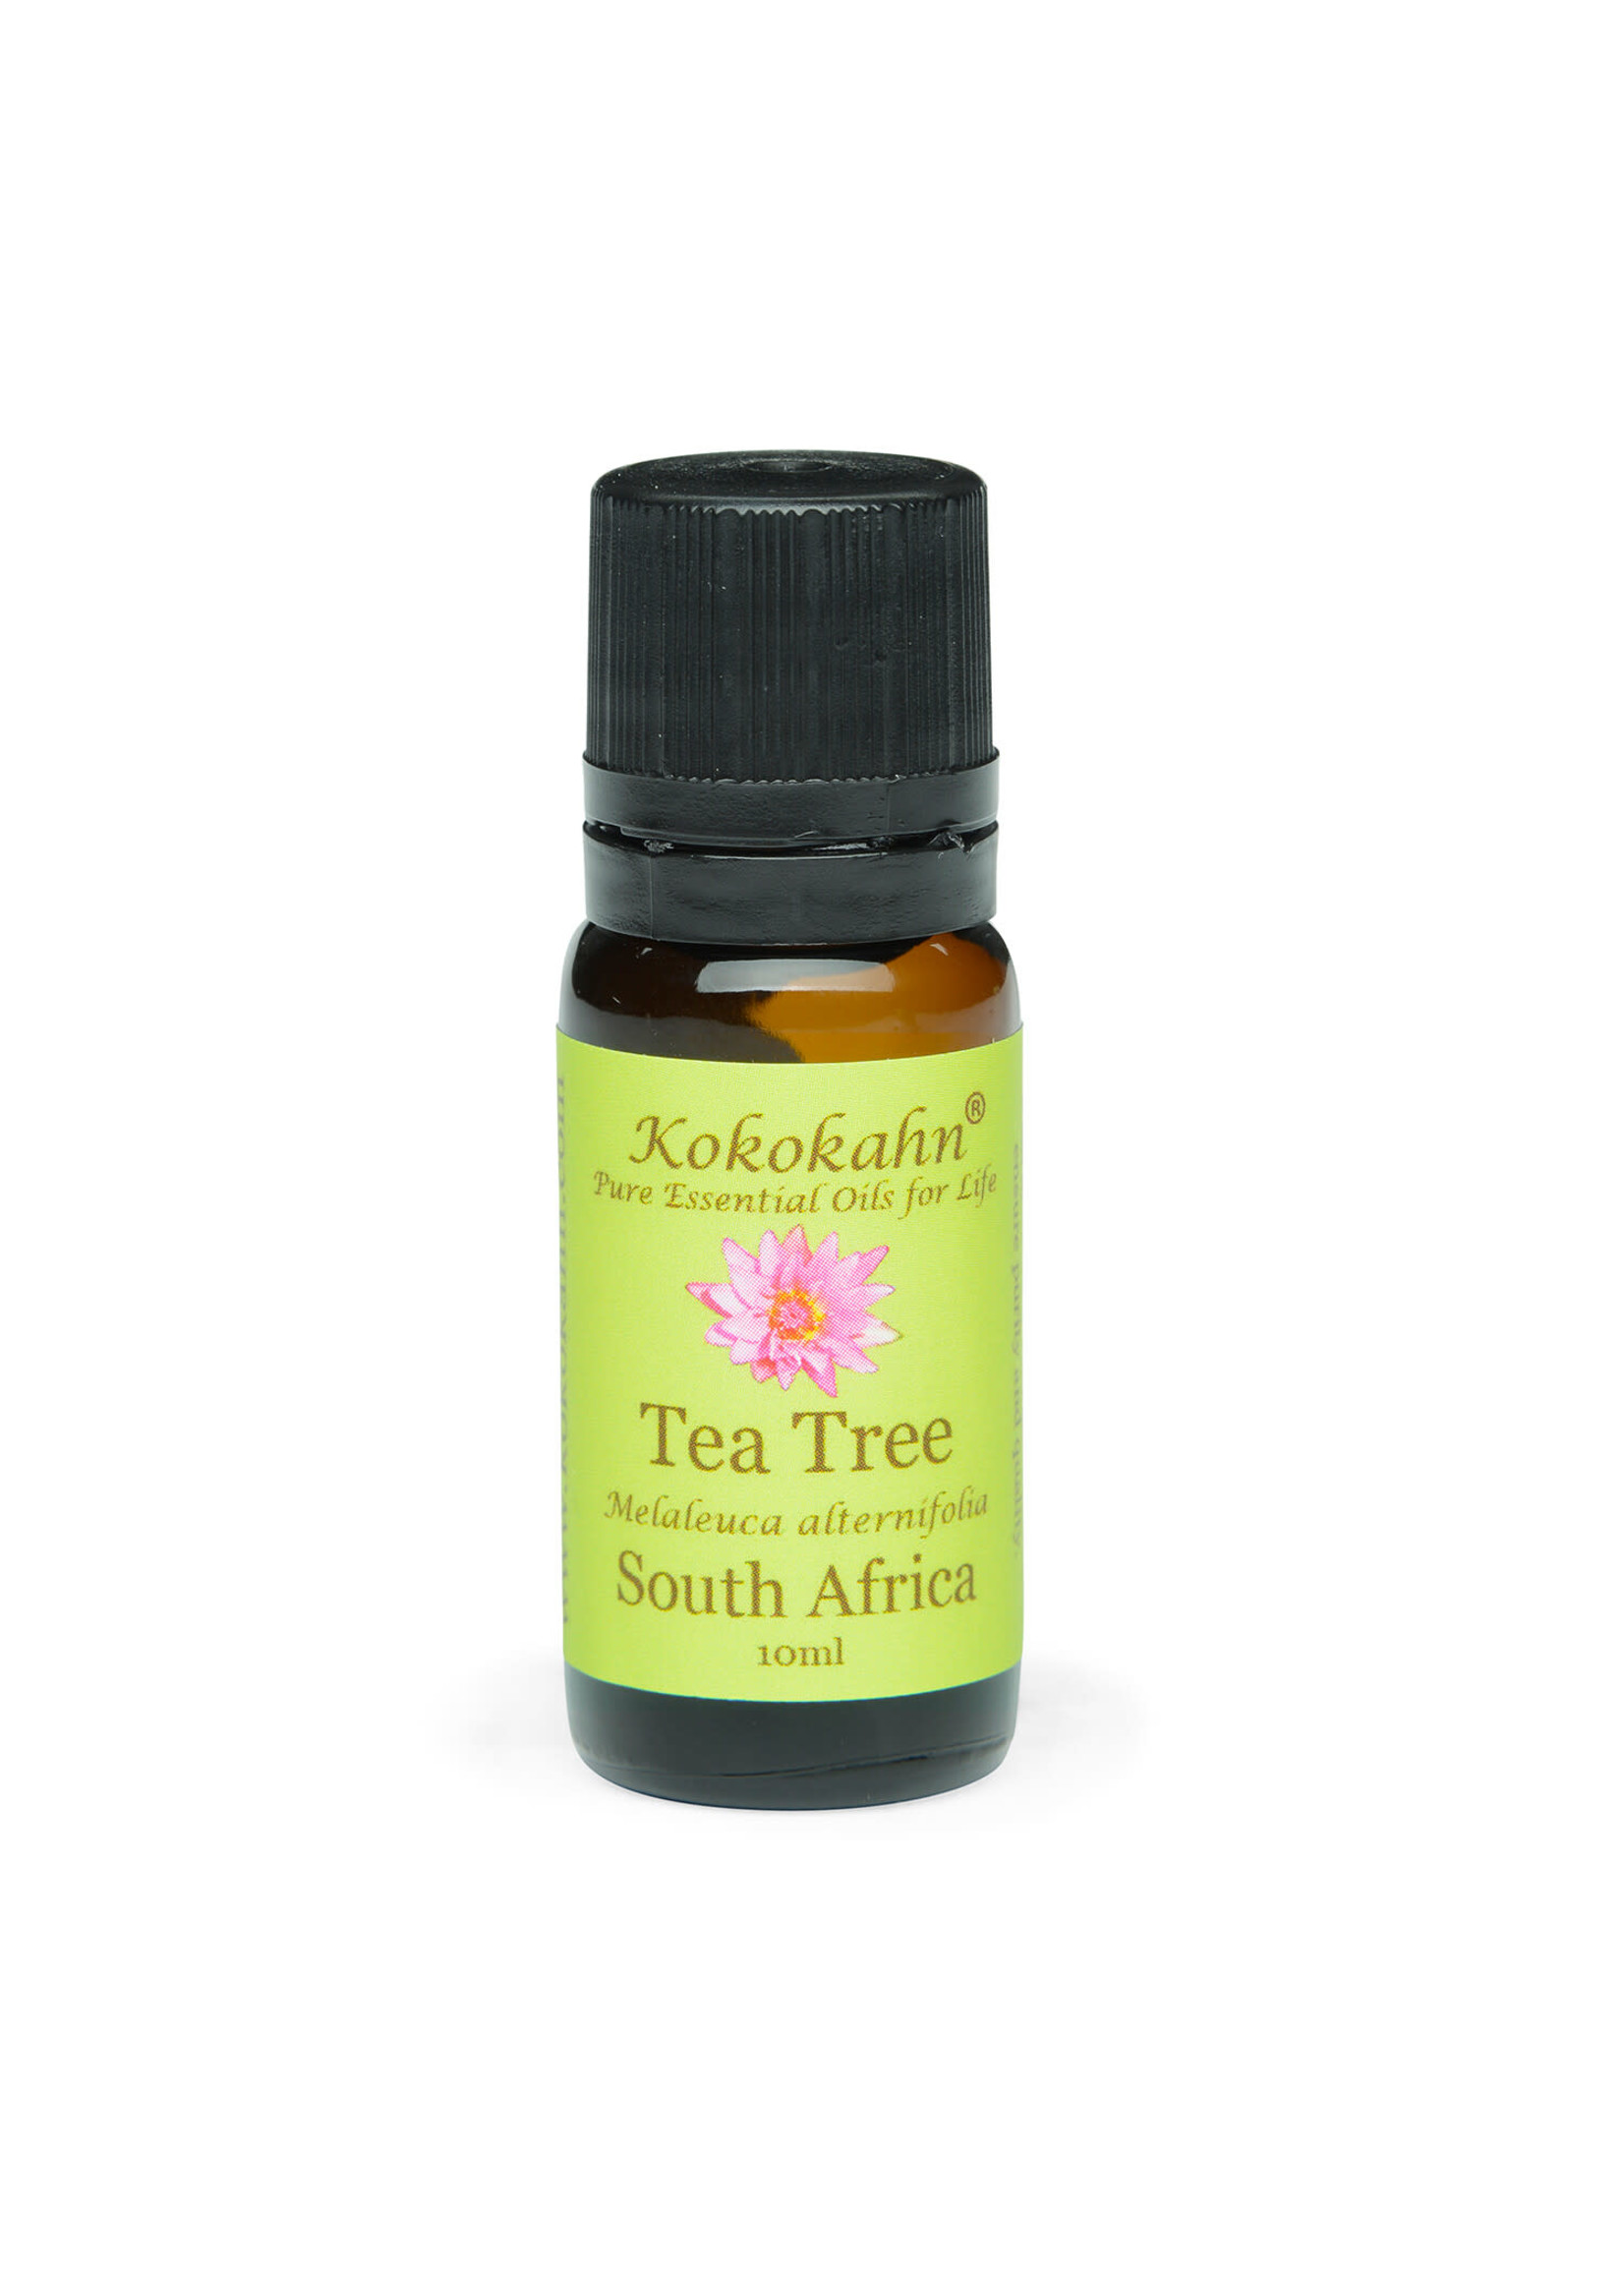 Kokokahn Tea Tree Essential Oil